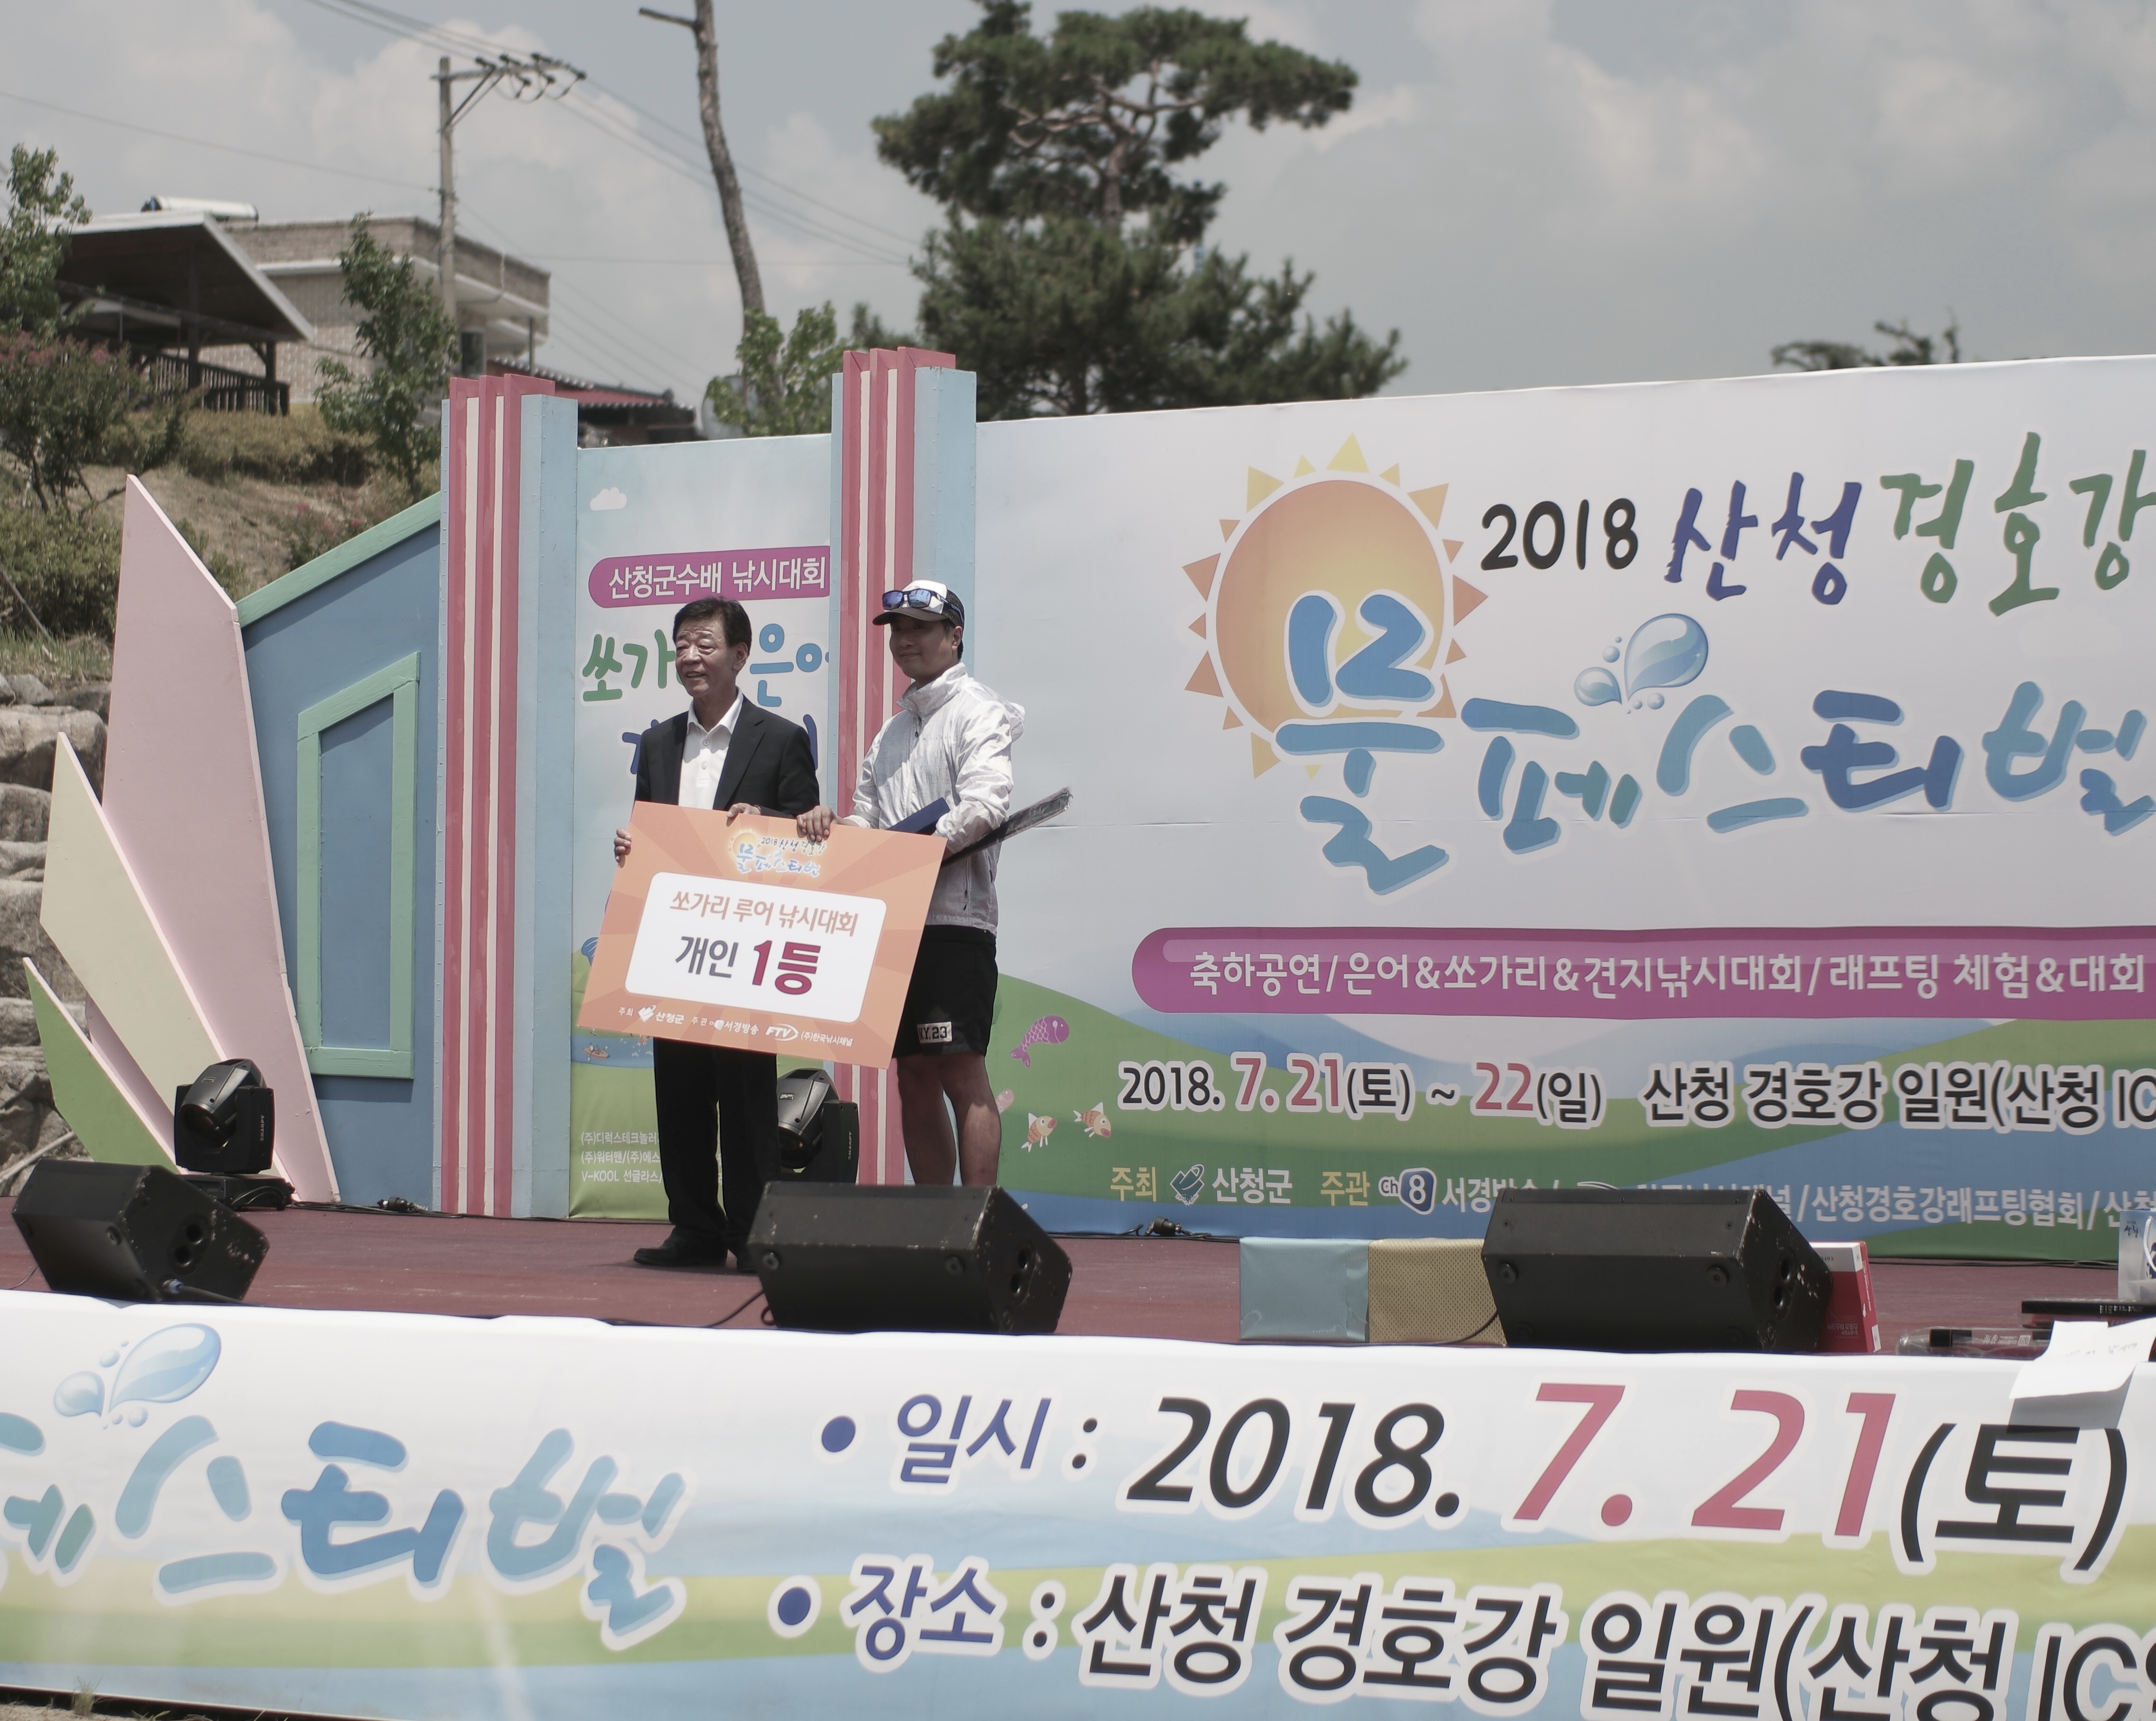 '2018 산청 경호강 물페스티벌' 가족 연인들이 함께하는 여름 대표 축제로 자리매김